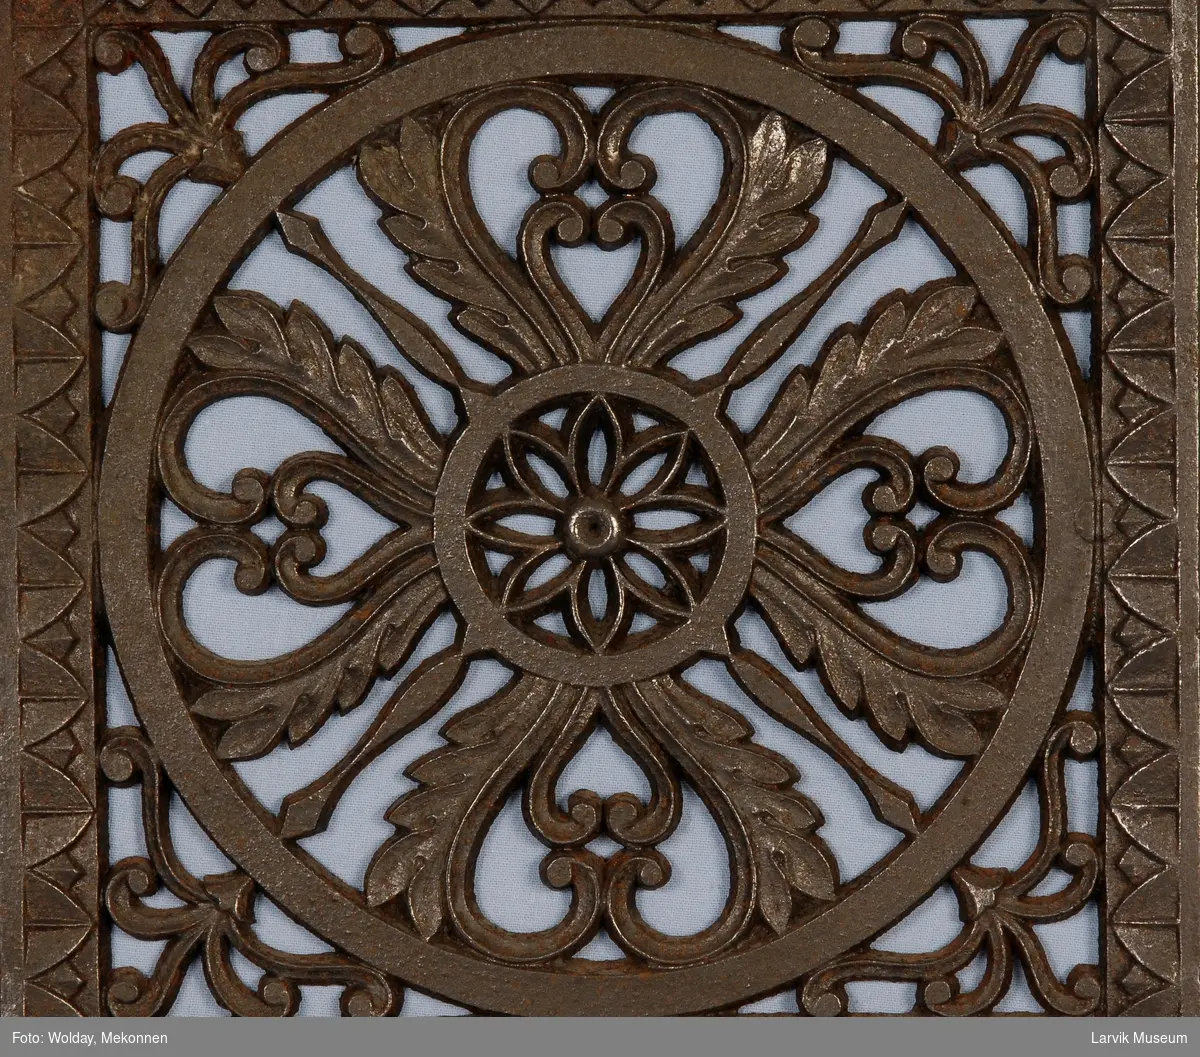 Symetrisk gjennombrudt blomster-ornamentikk i en sirkel, ornamentikk i hjørnene avsluttes med en bord-ramme